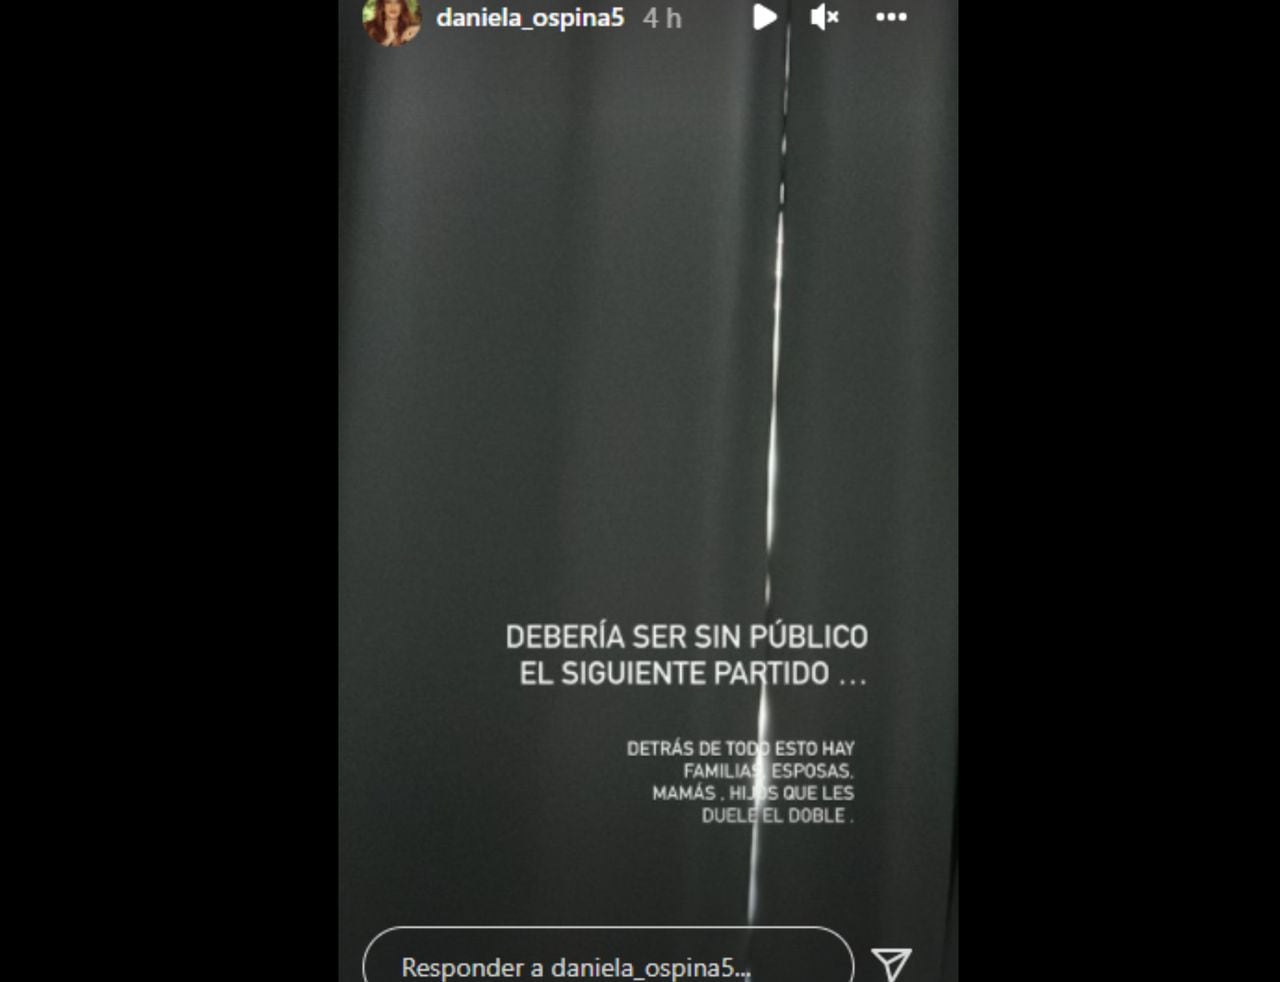 Historia en Instagram Daniela Ospina partido sin público